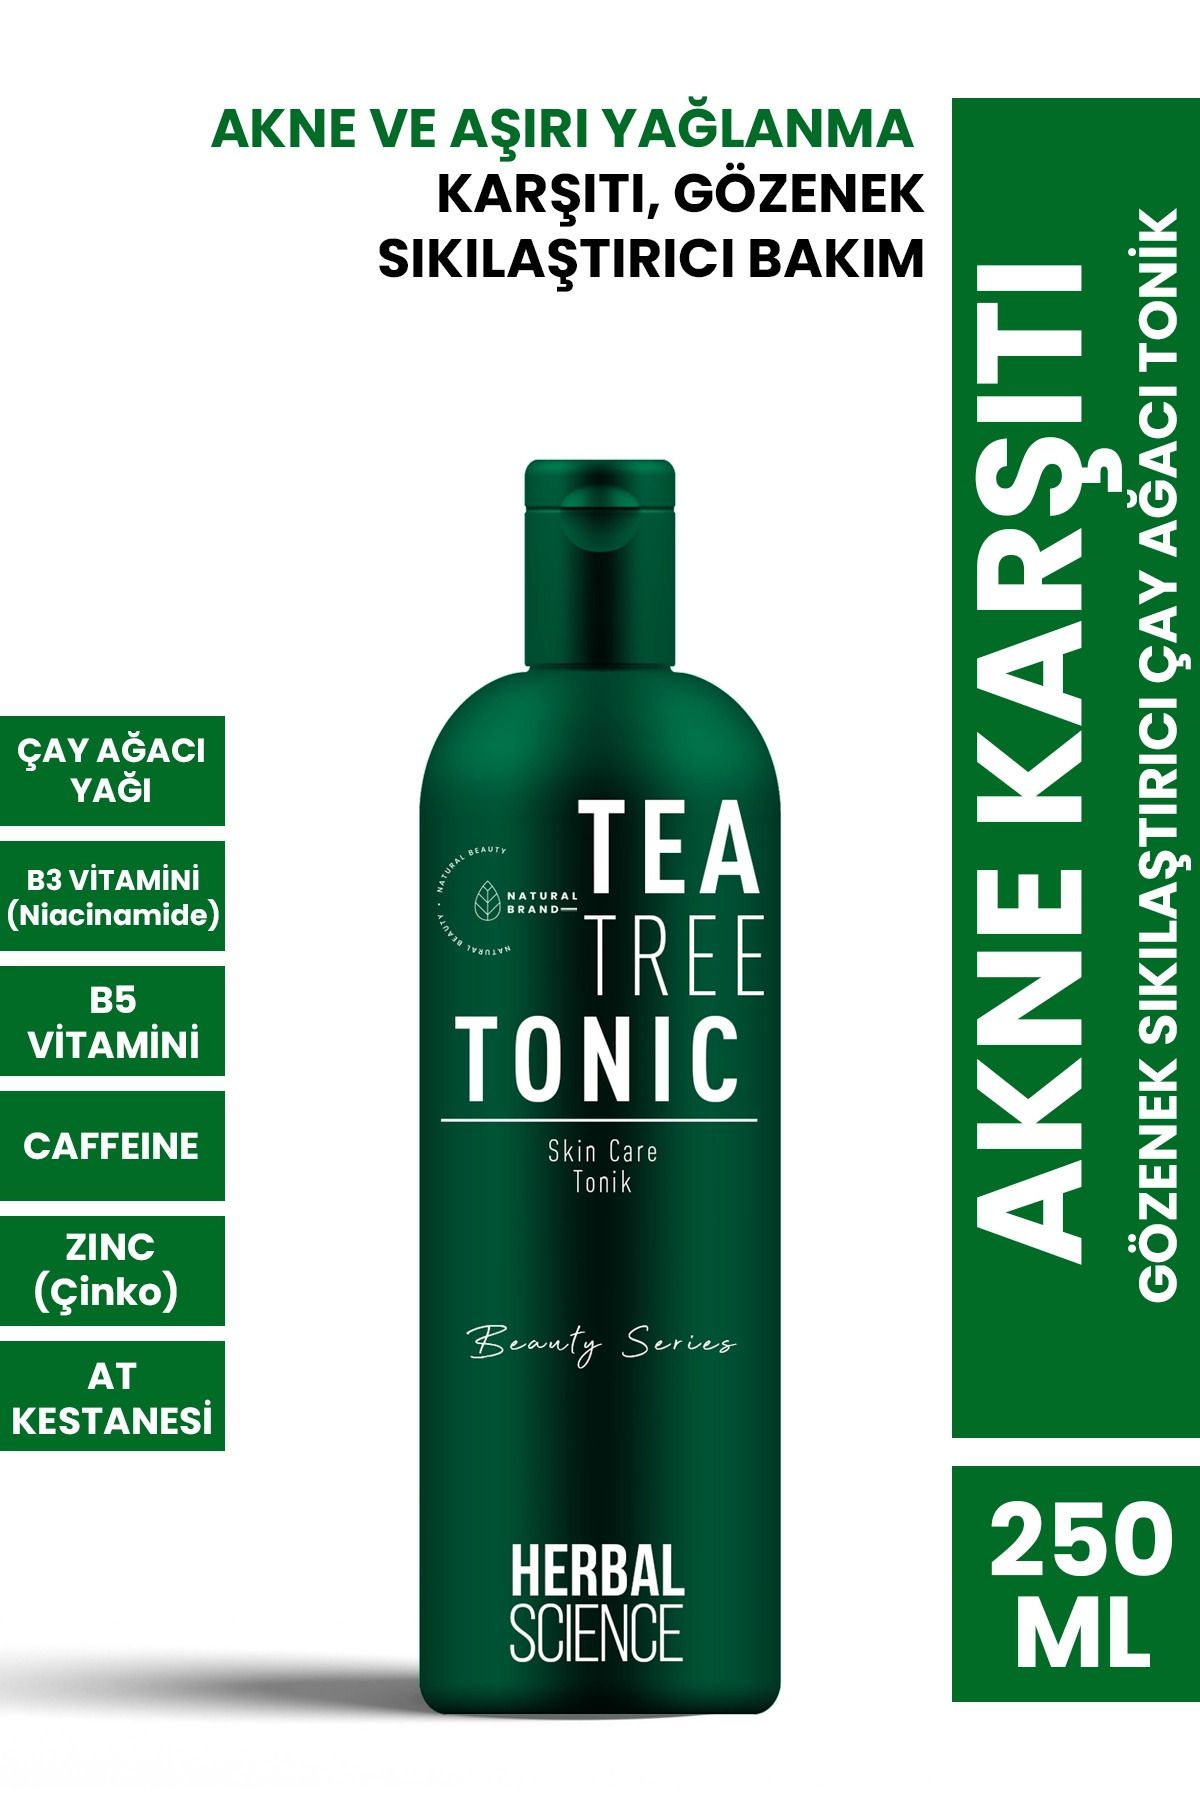 PROCSIN Herbal Science Akne Karşıtı Gözenek Sıkılaştırıcı Çay Ağacı Tonik 250 ml